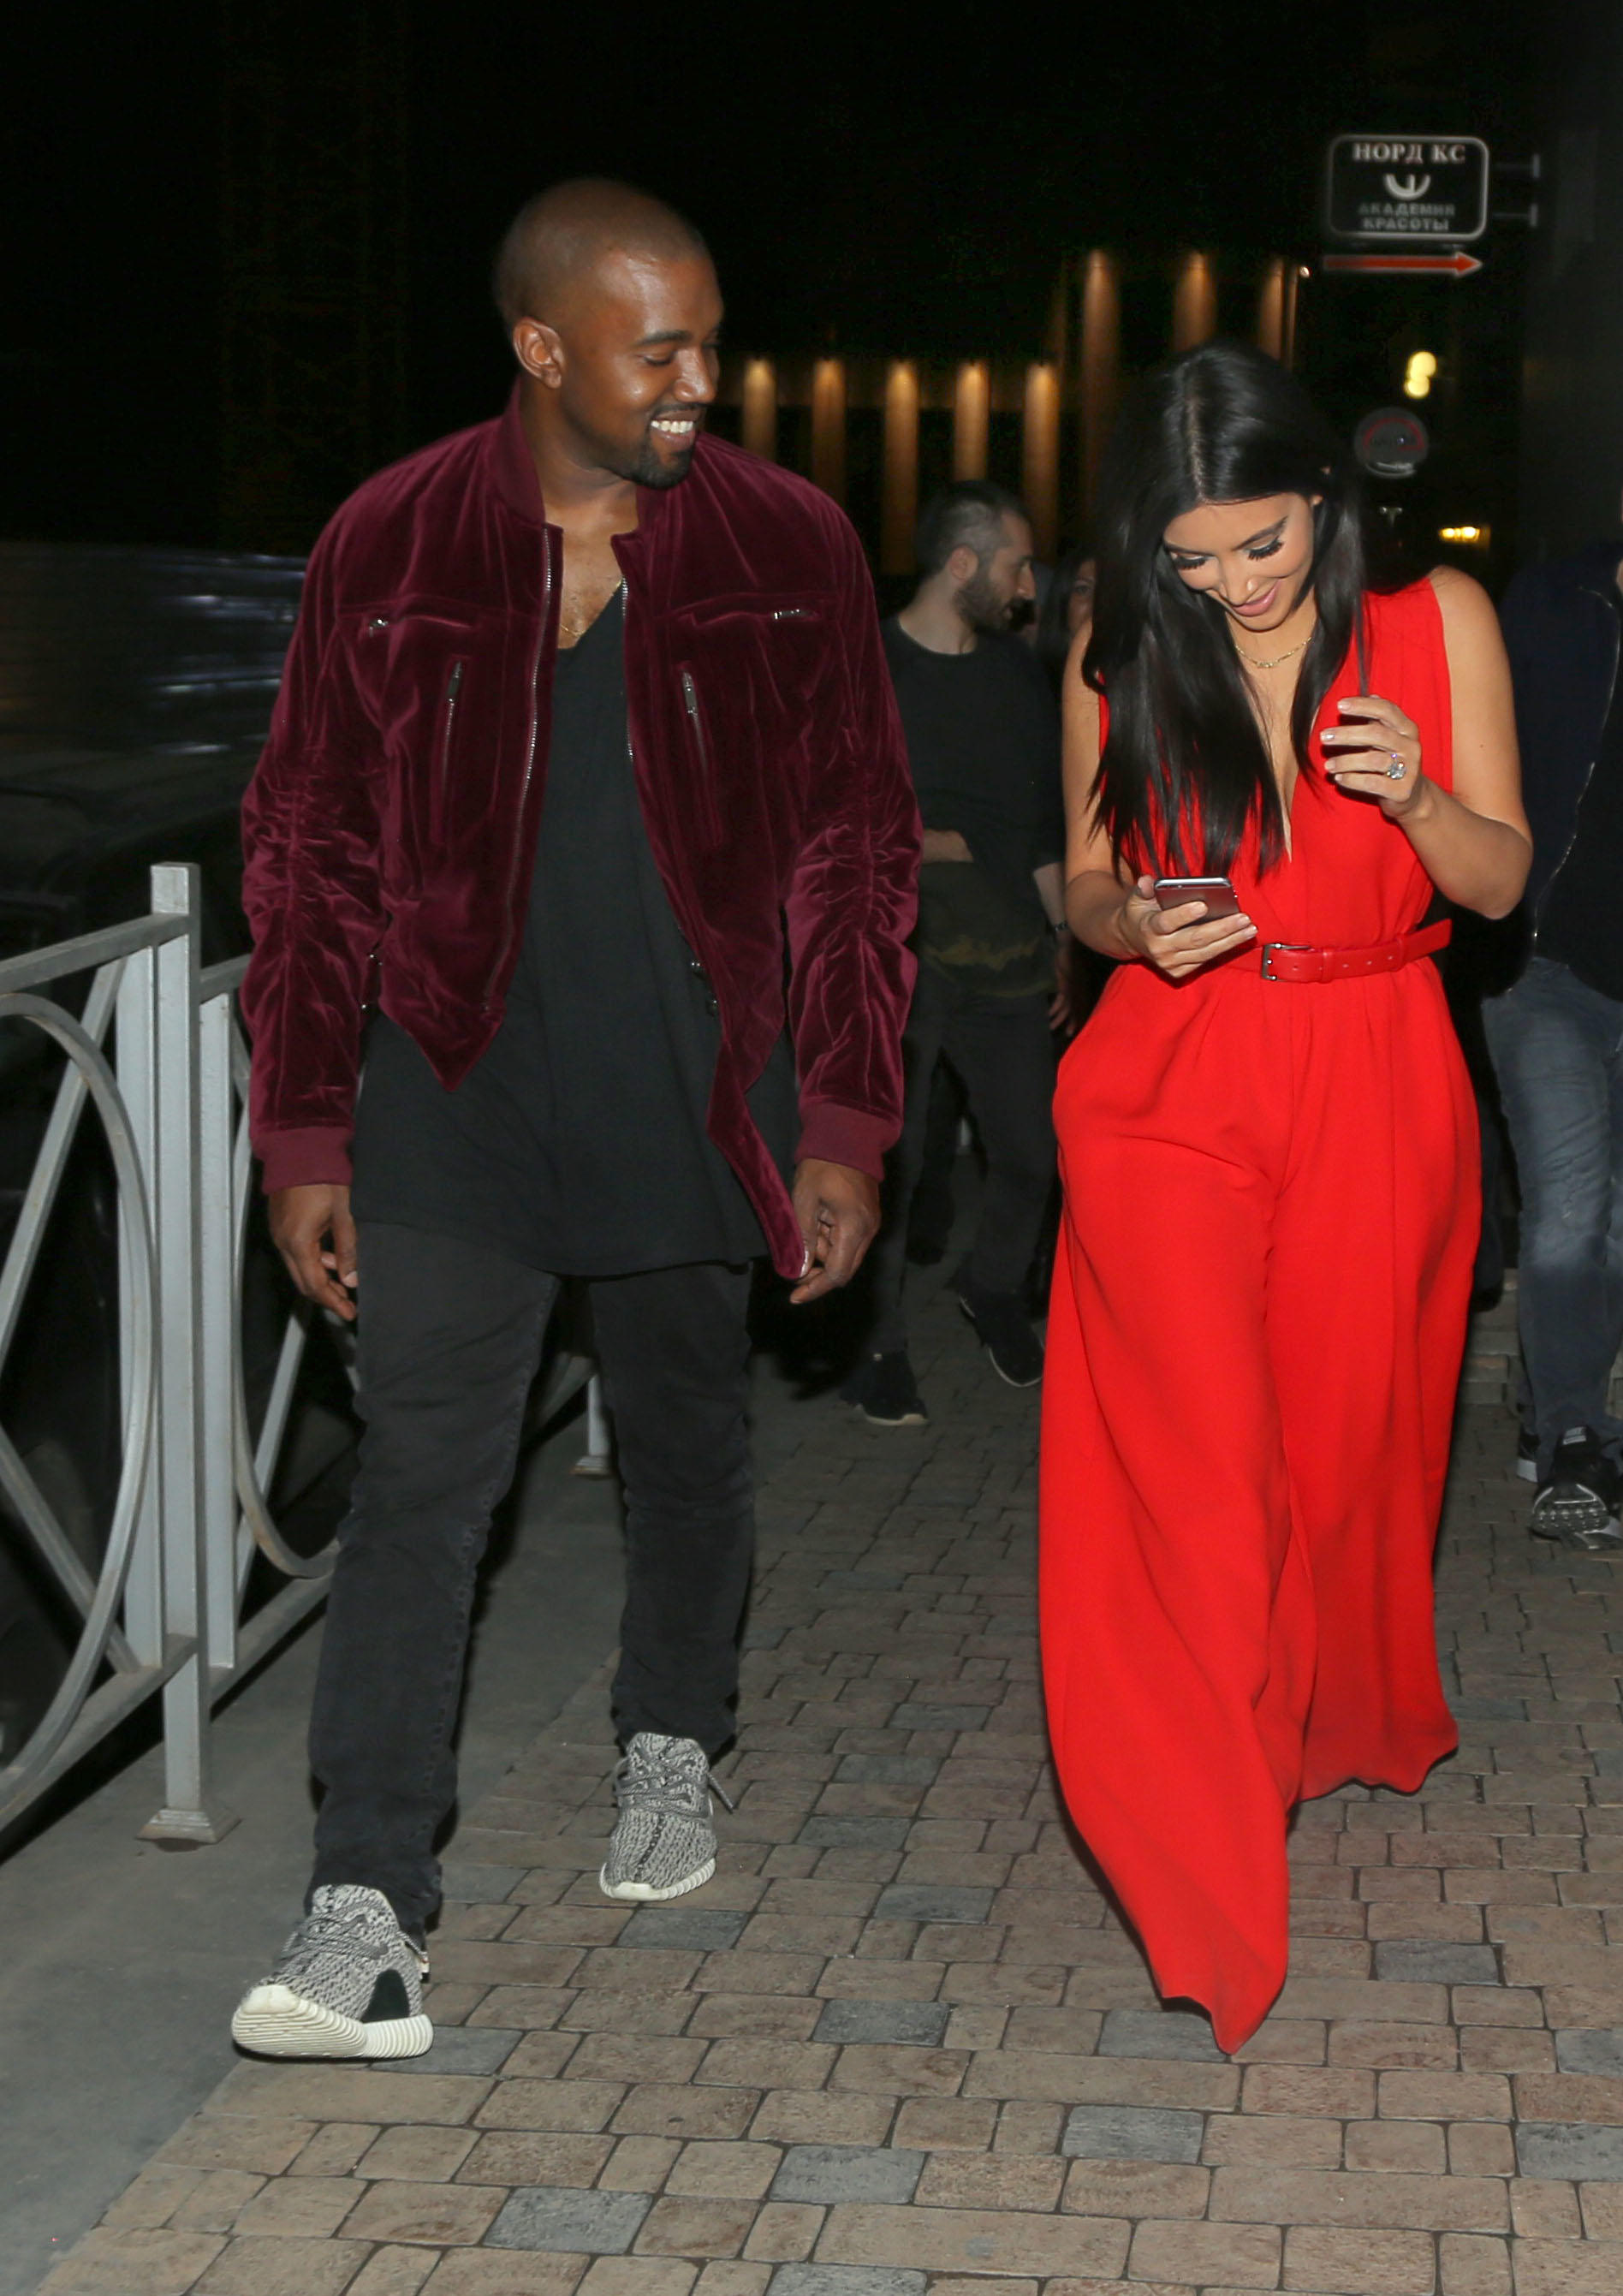 Kim Kardashian & Kanye West share laughs during date night